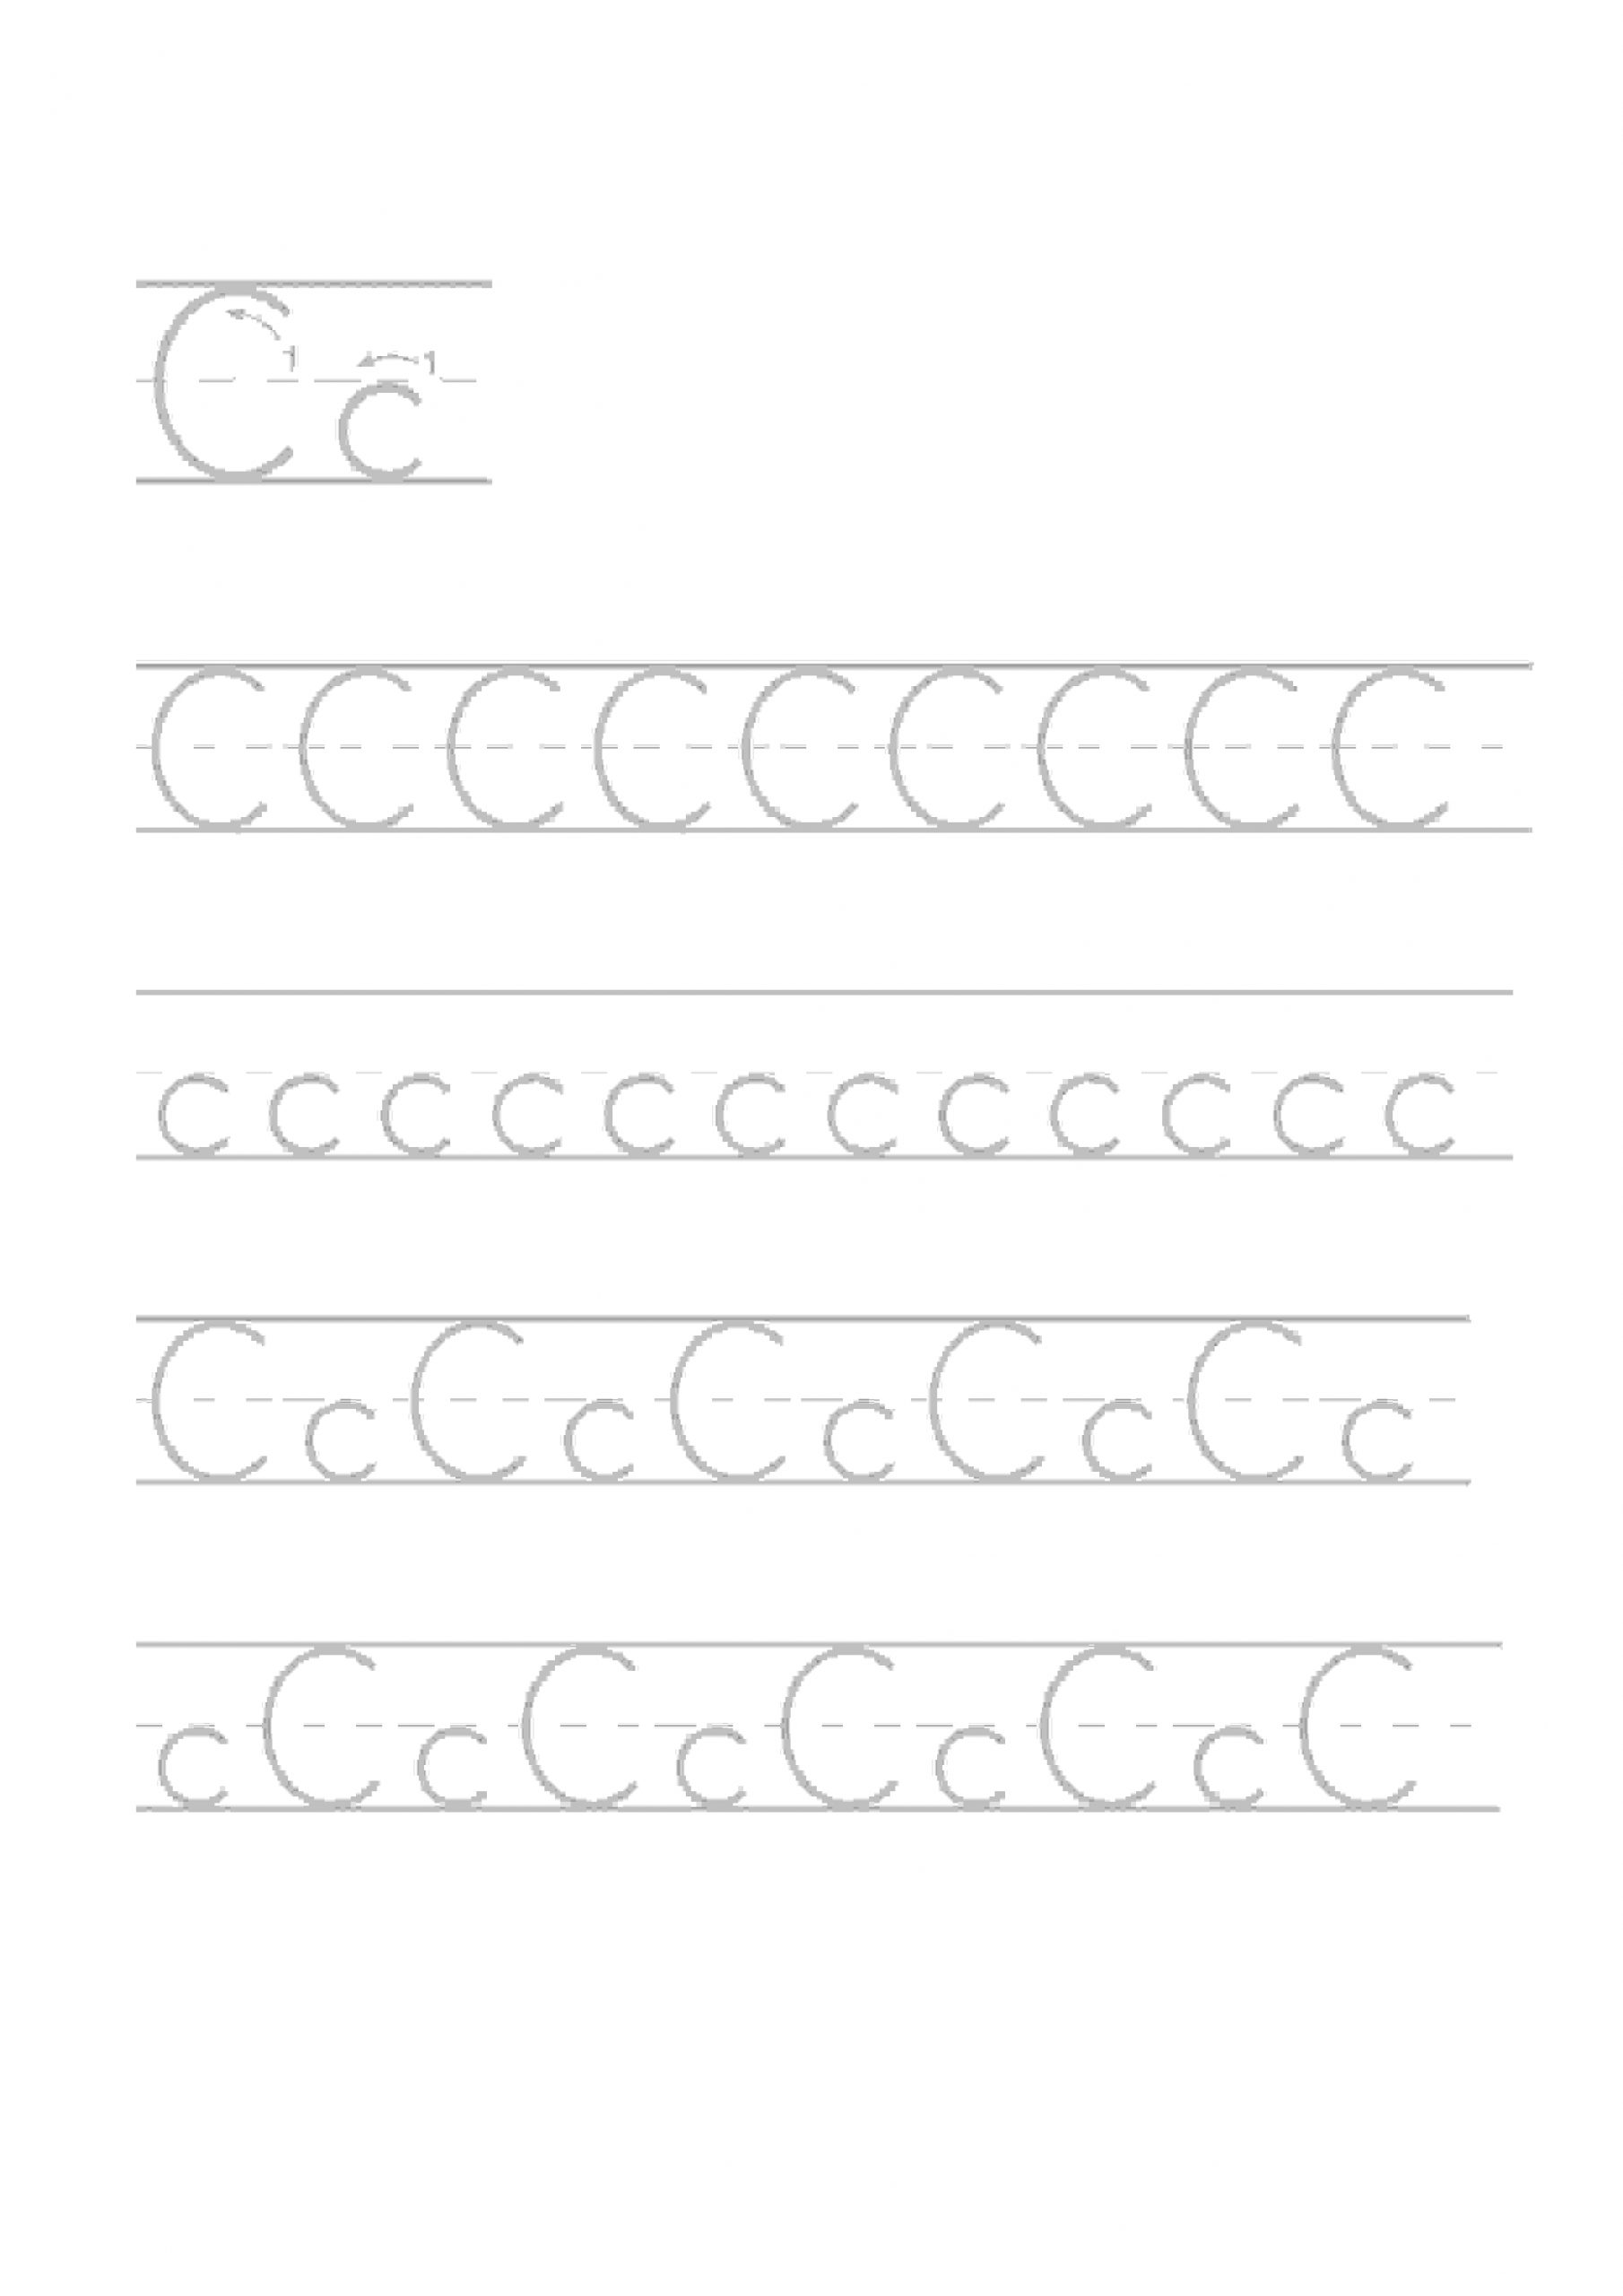 Exercices Pour Enfants De Maternelle Calligraphie Alphabet 3 serapportantà Exercice Pour Apprendre L Alphabet En Maternelle